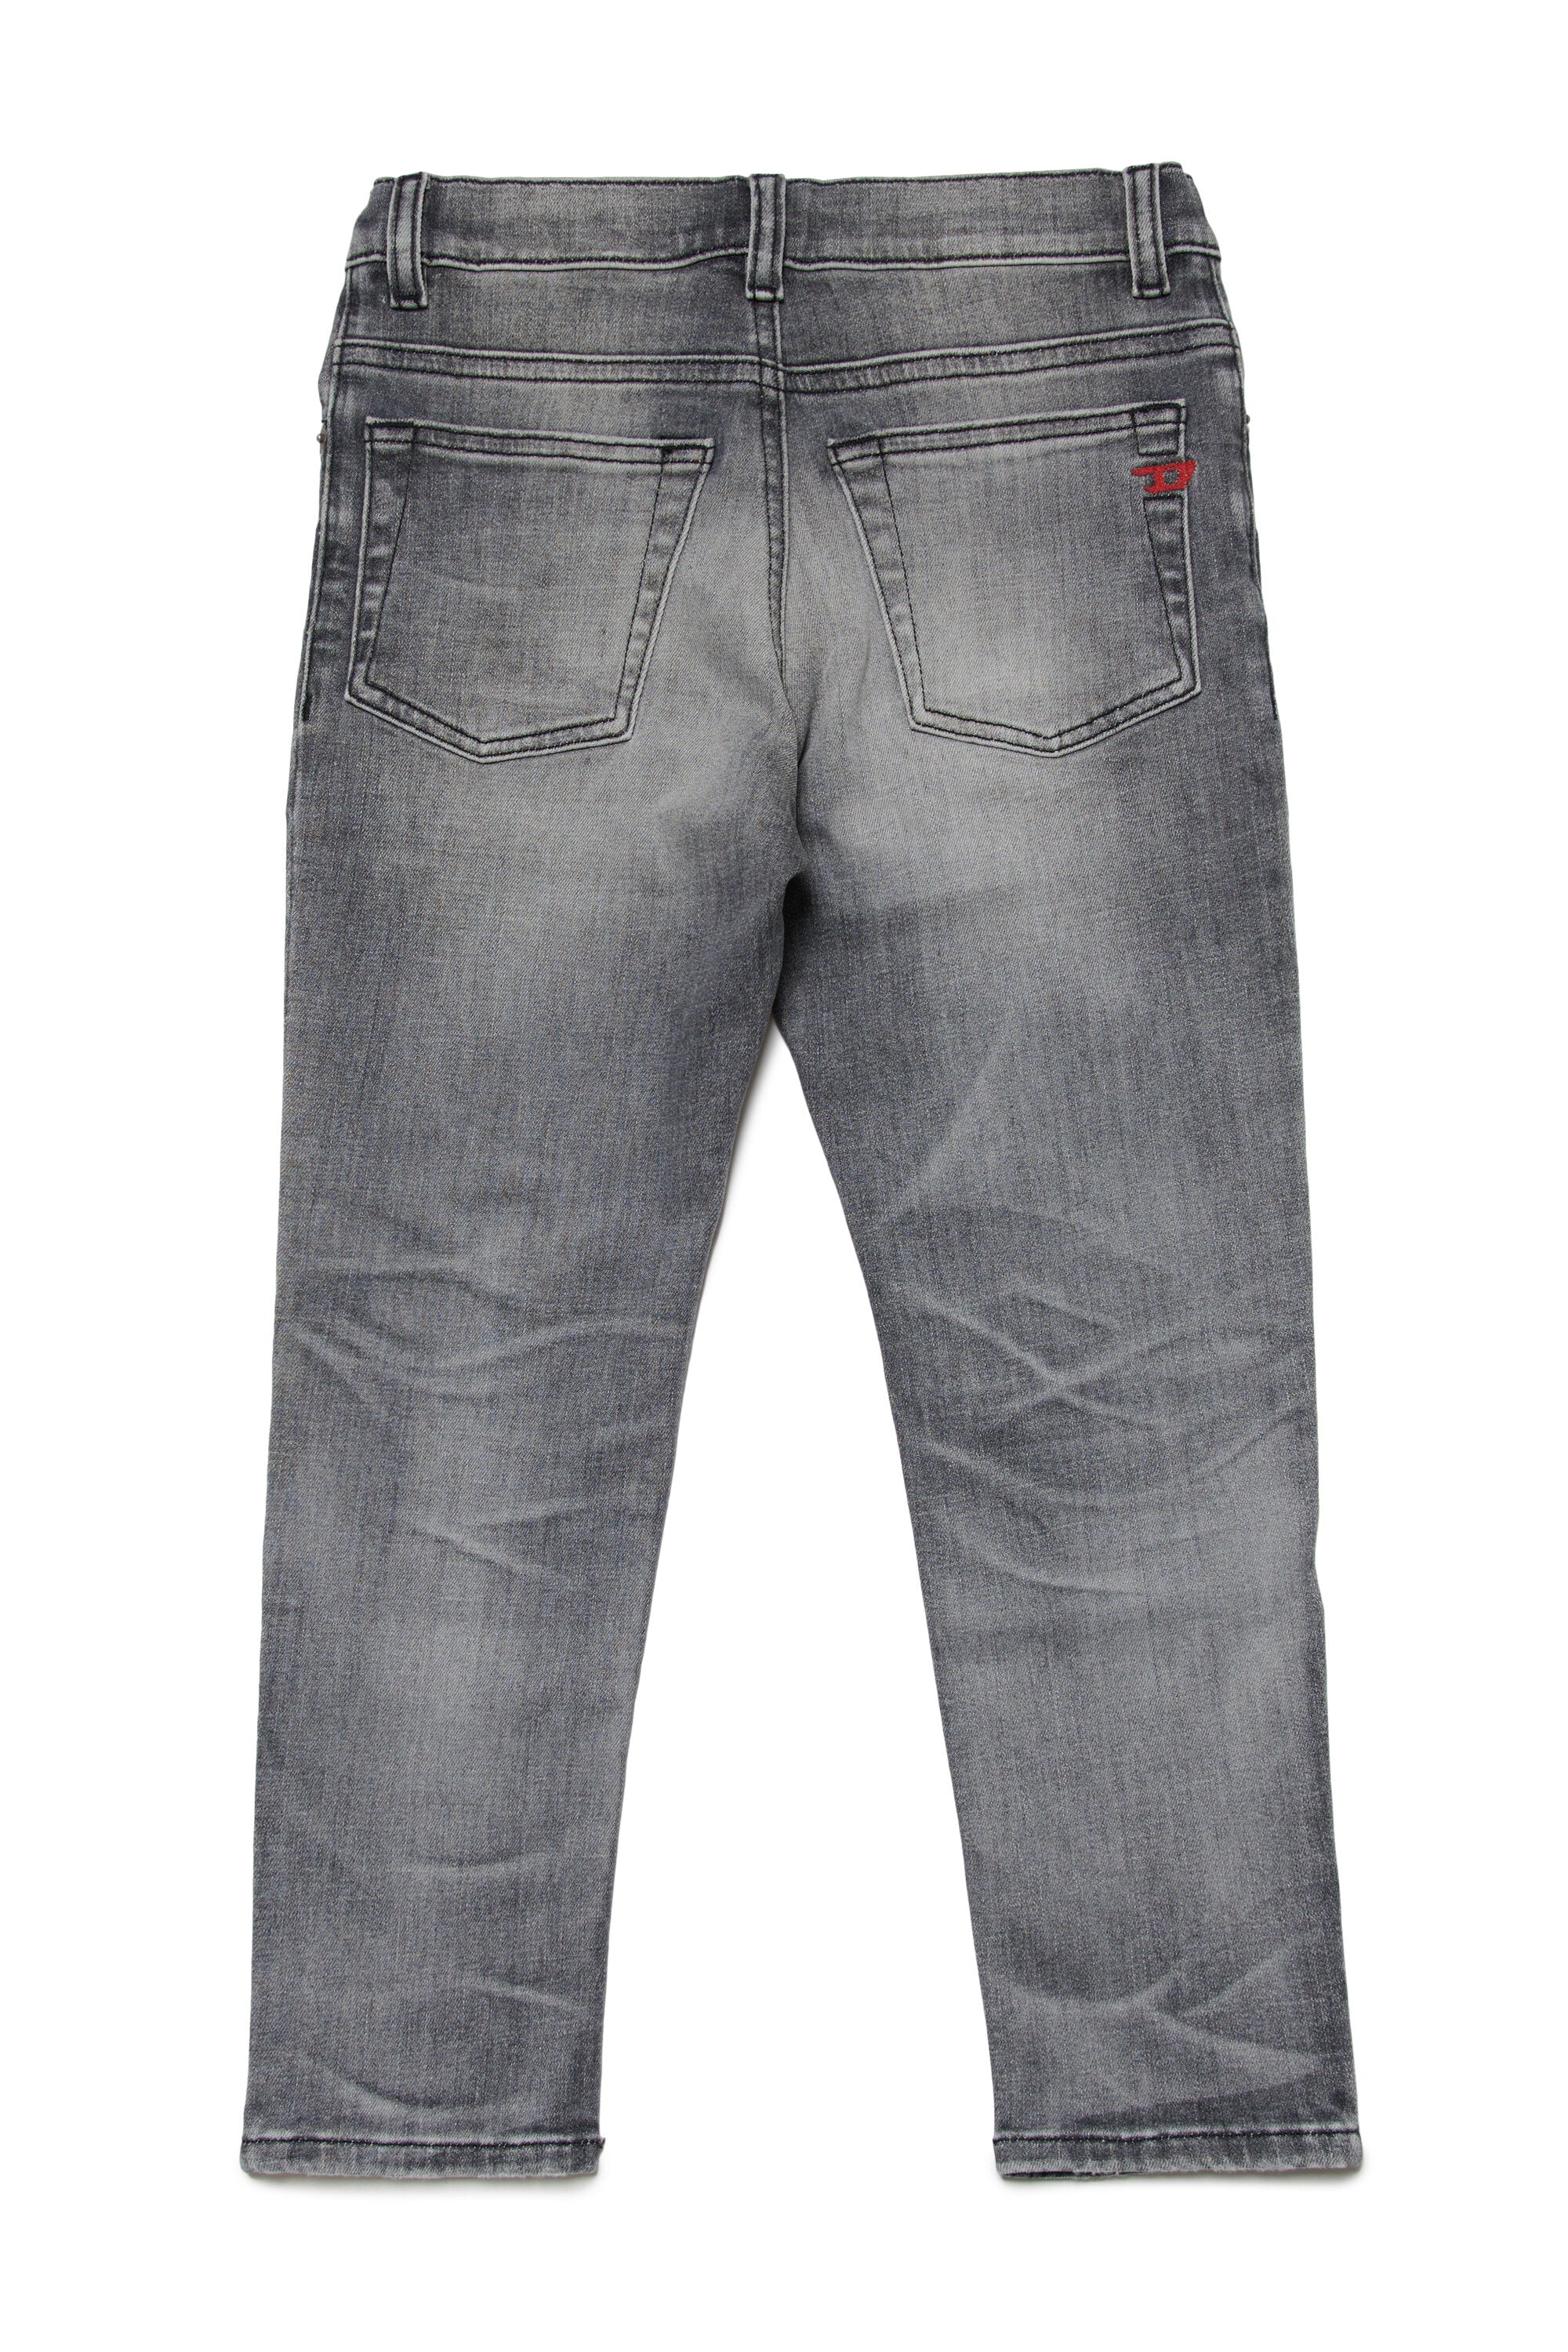 Jeans regular grigio sfumato - 2005